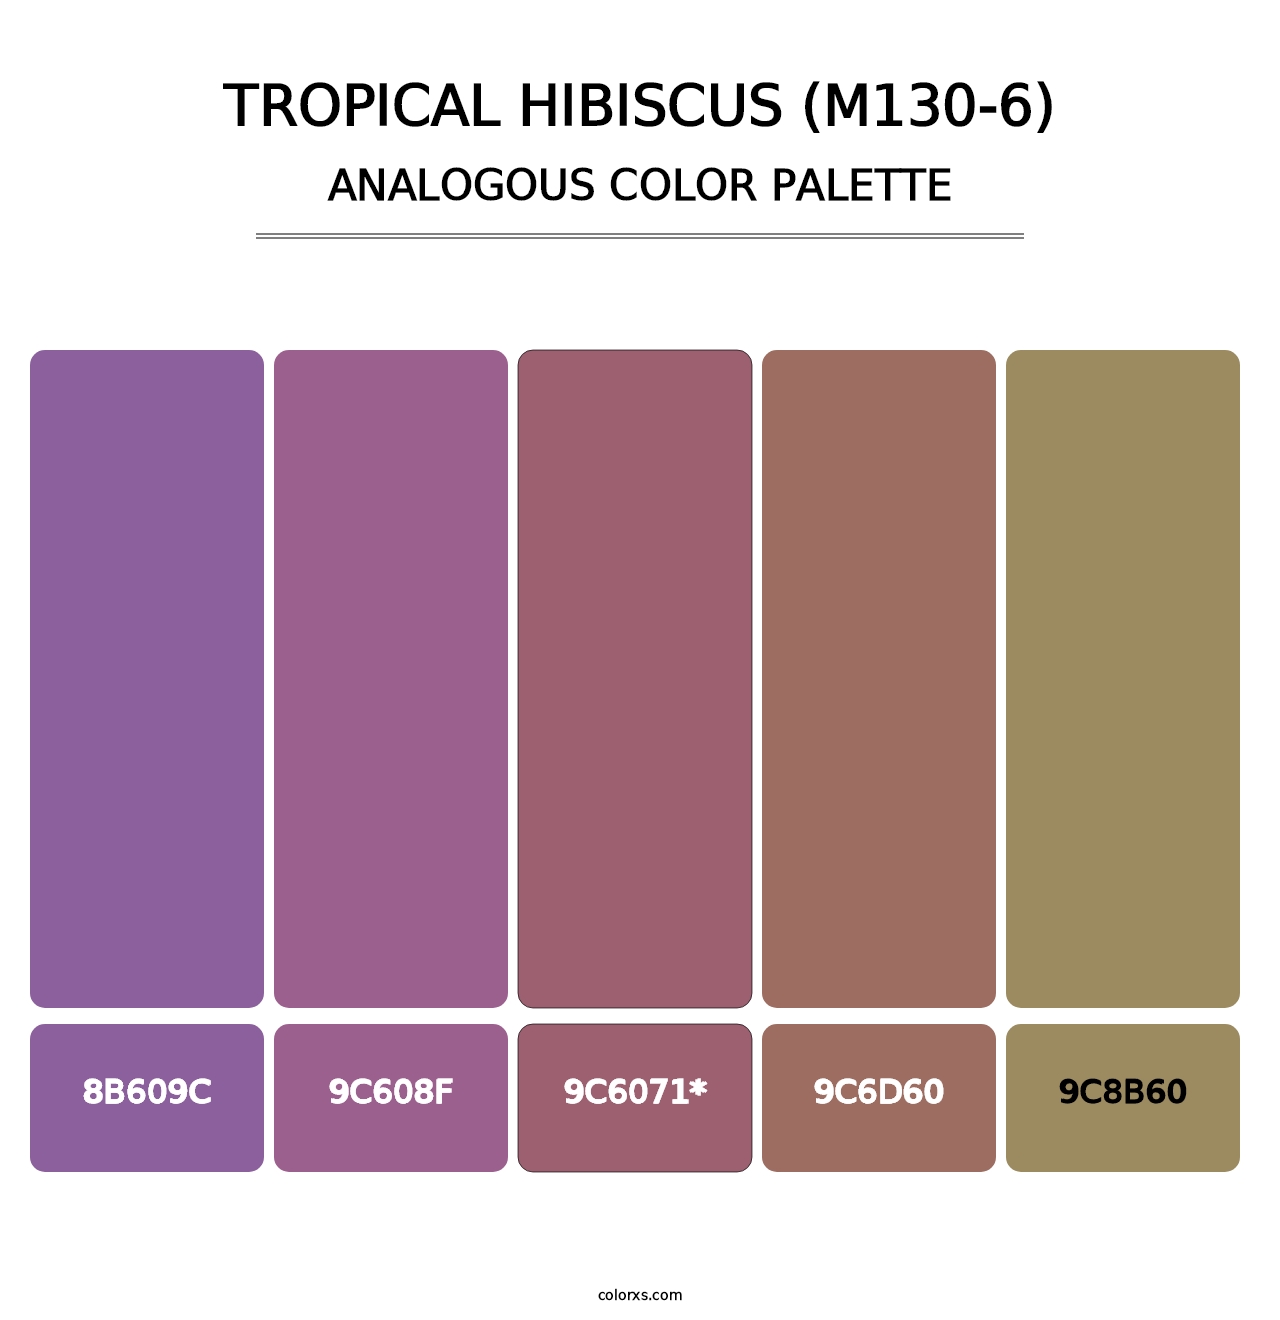 Tropical Hibiscus (M130-6) - Analogous Color Palette